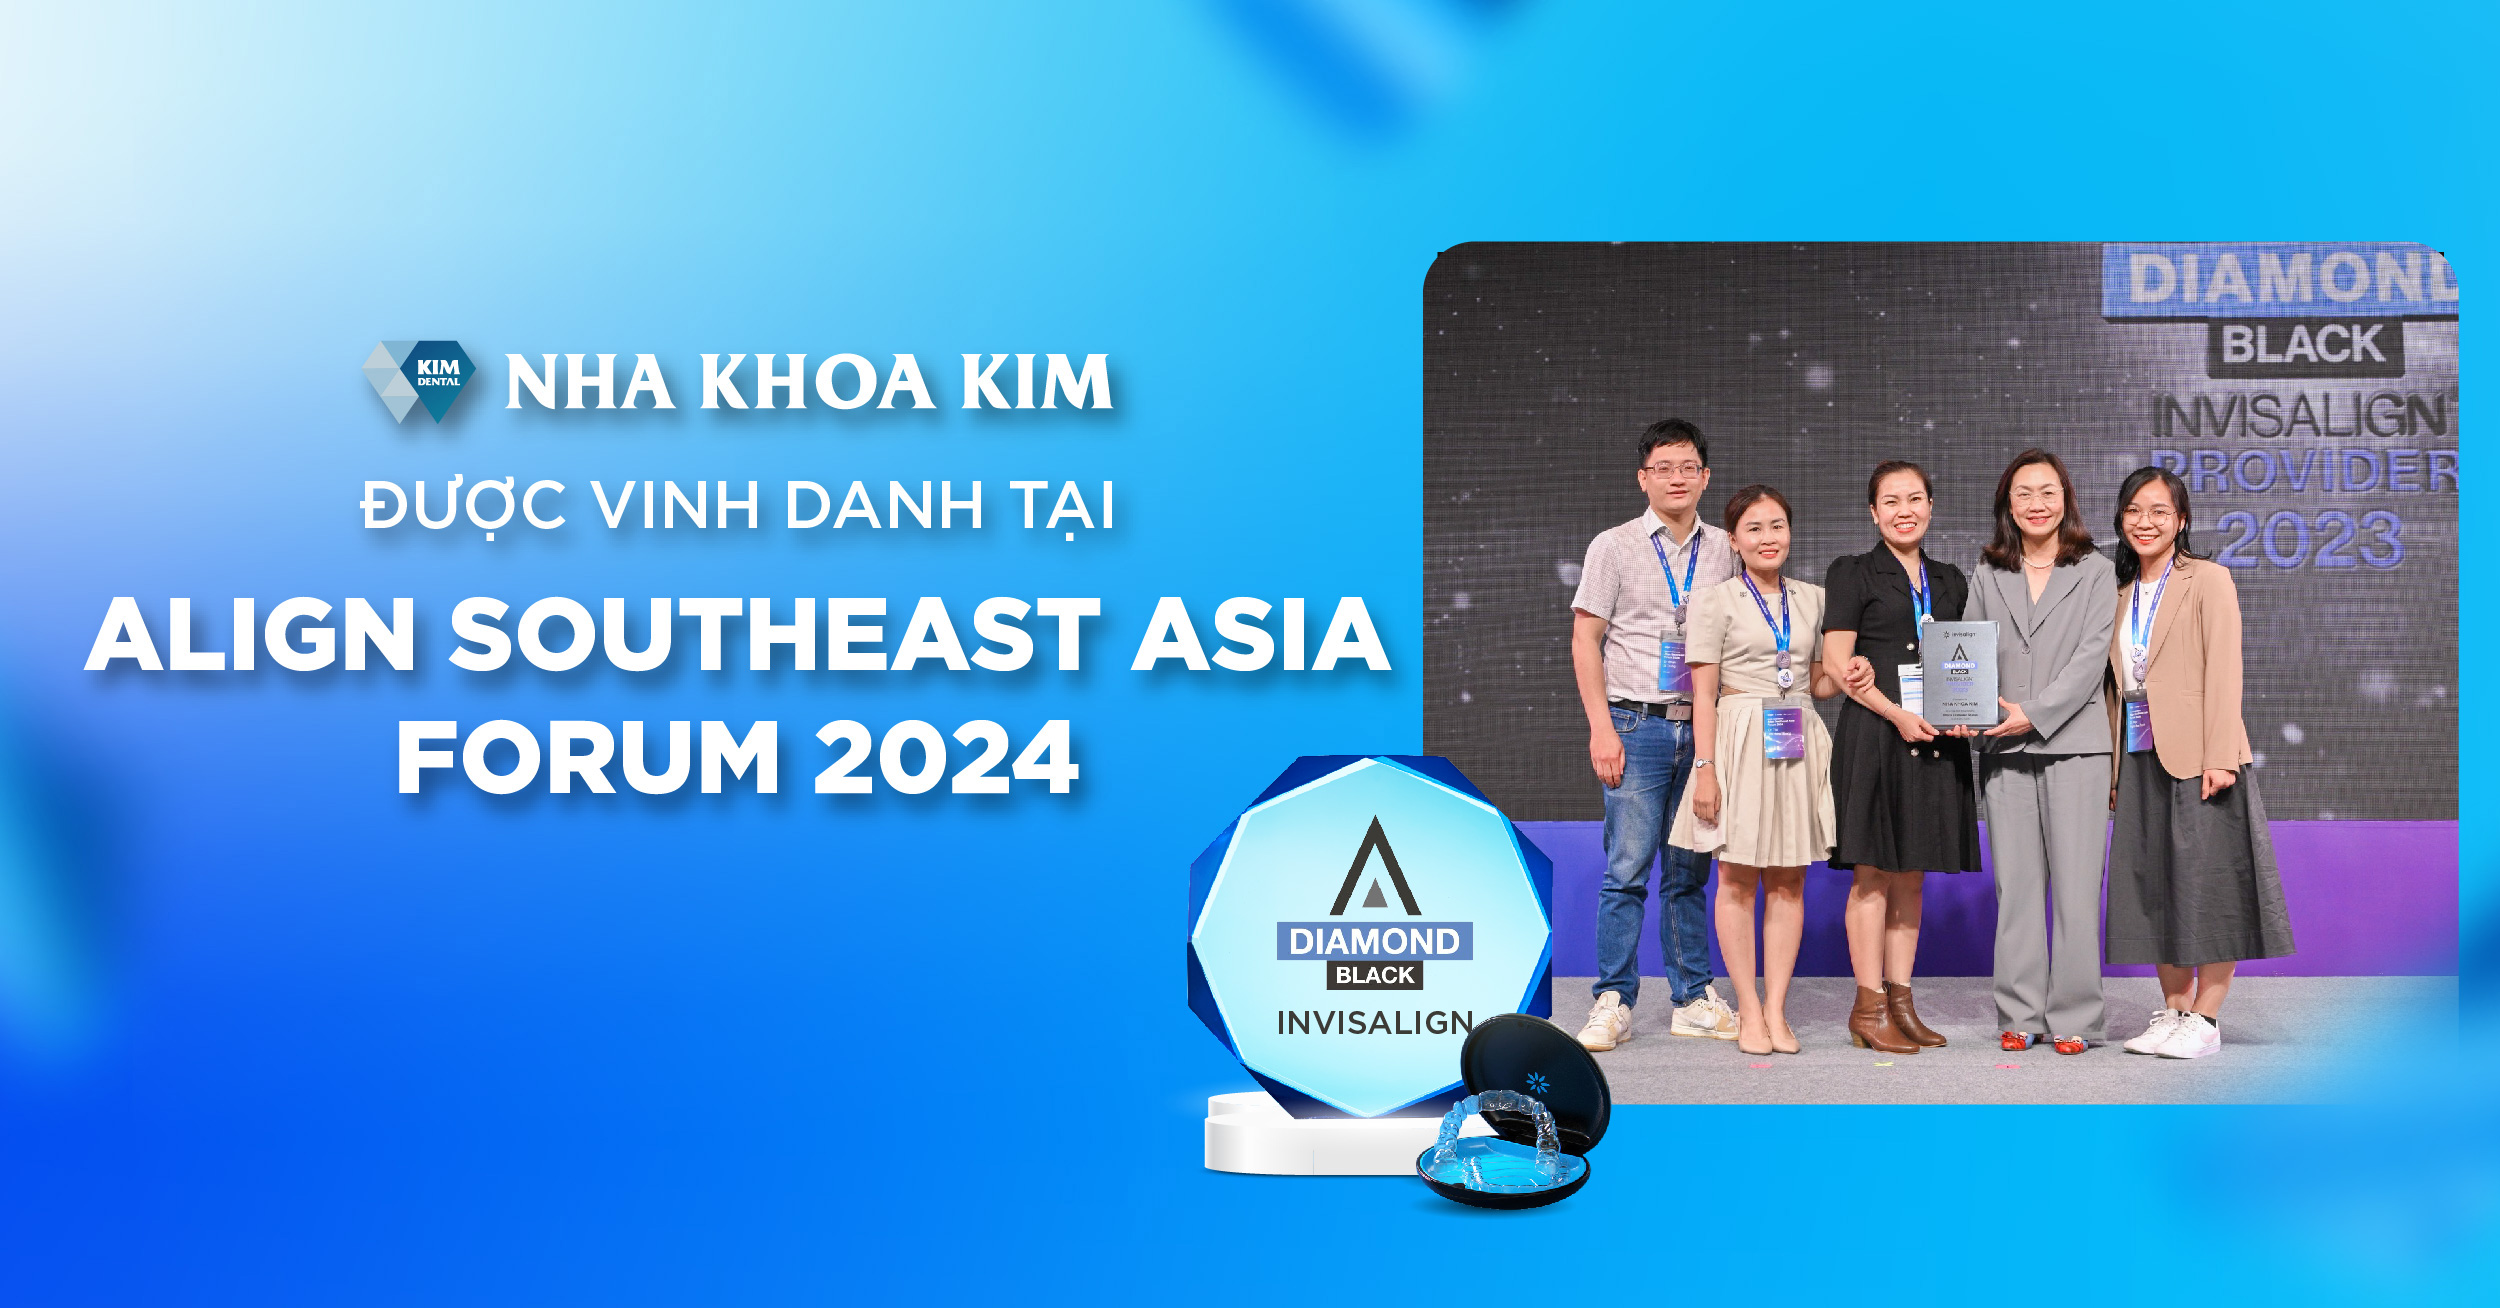 Nha Khoa Kim được vinh danh tại Align Southeast Asia Forum 2024